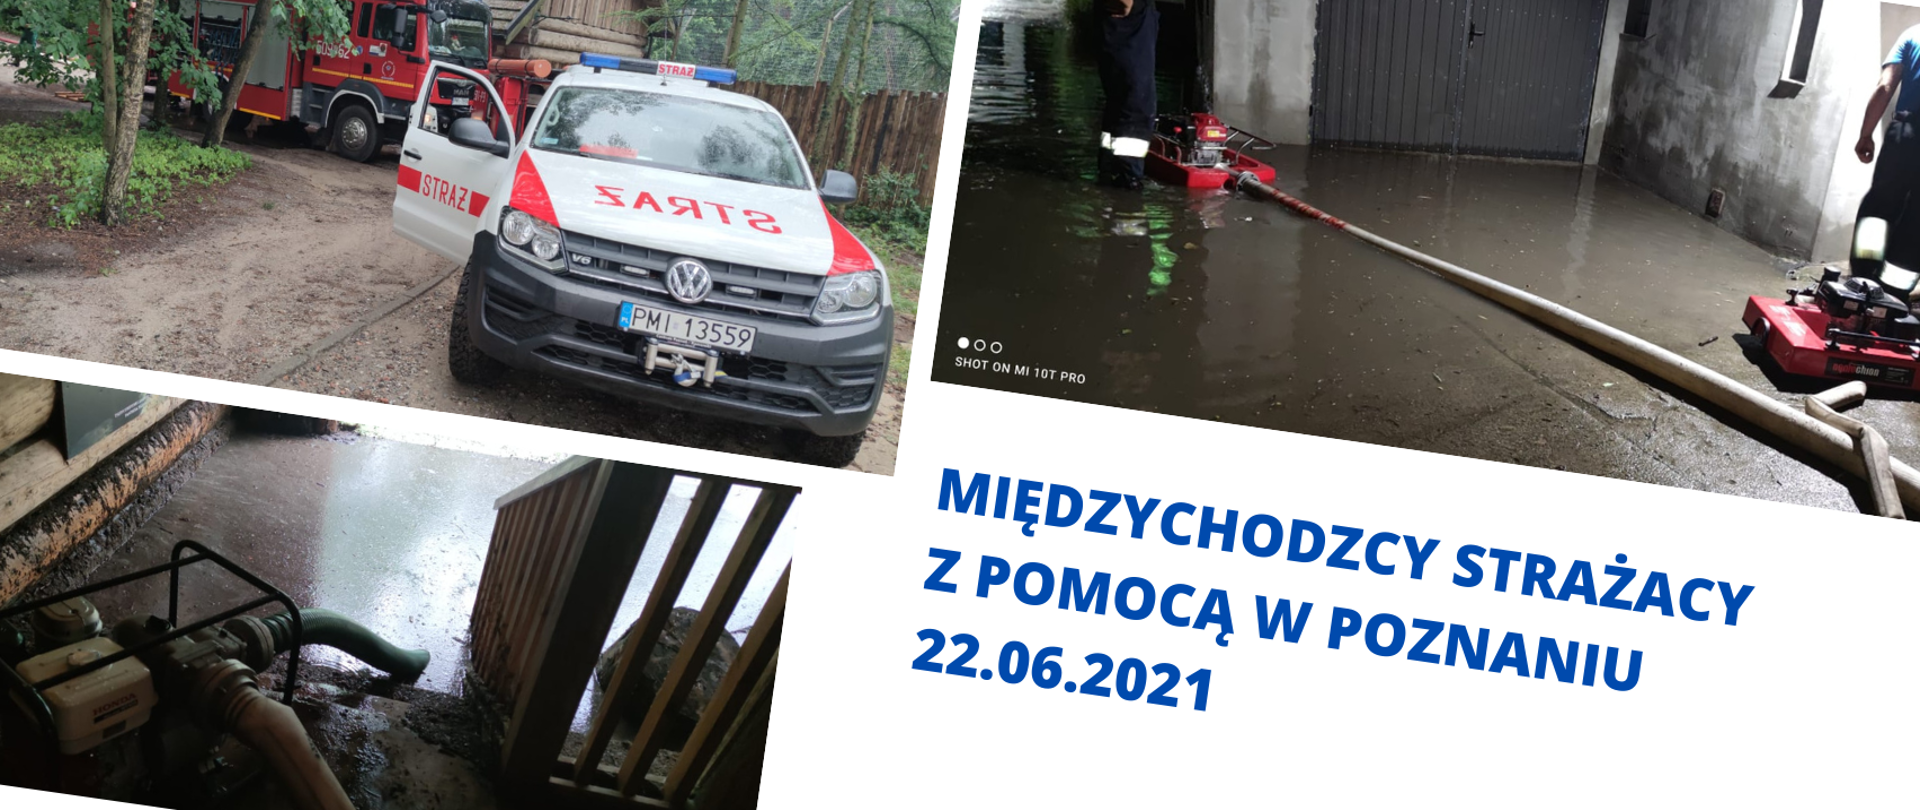 Zdjęcie przedstawia działania strażaków podczas pomocy po burzach w Poznaniu